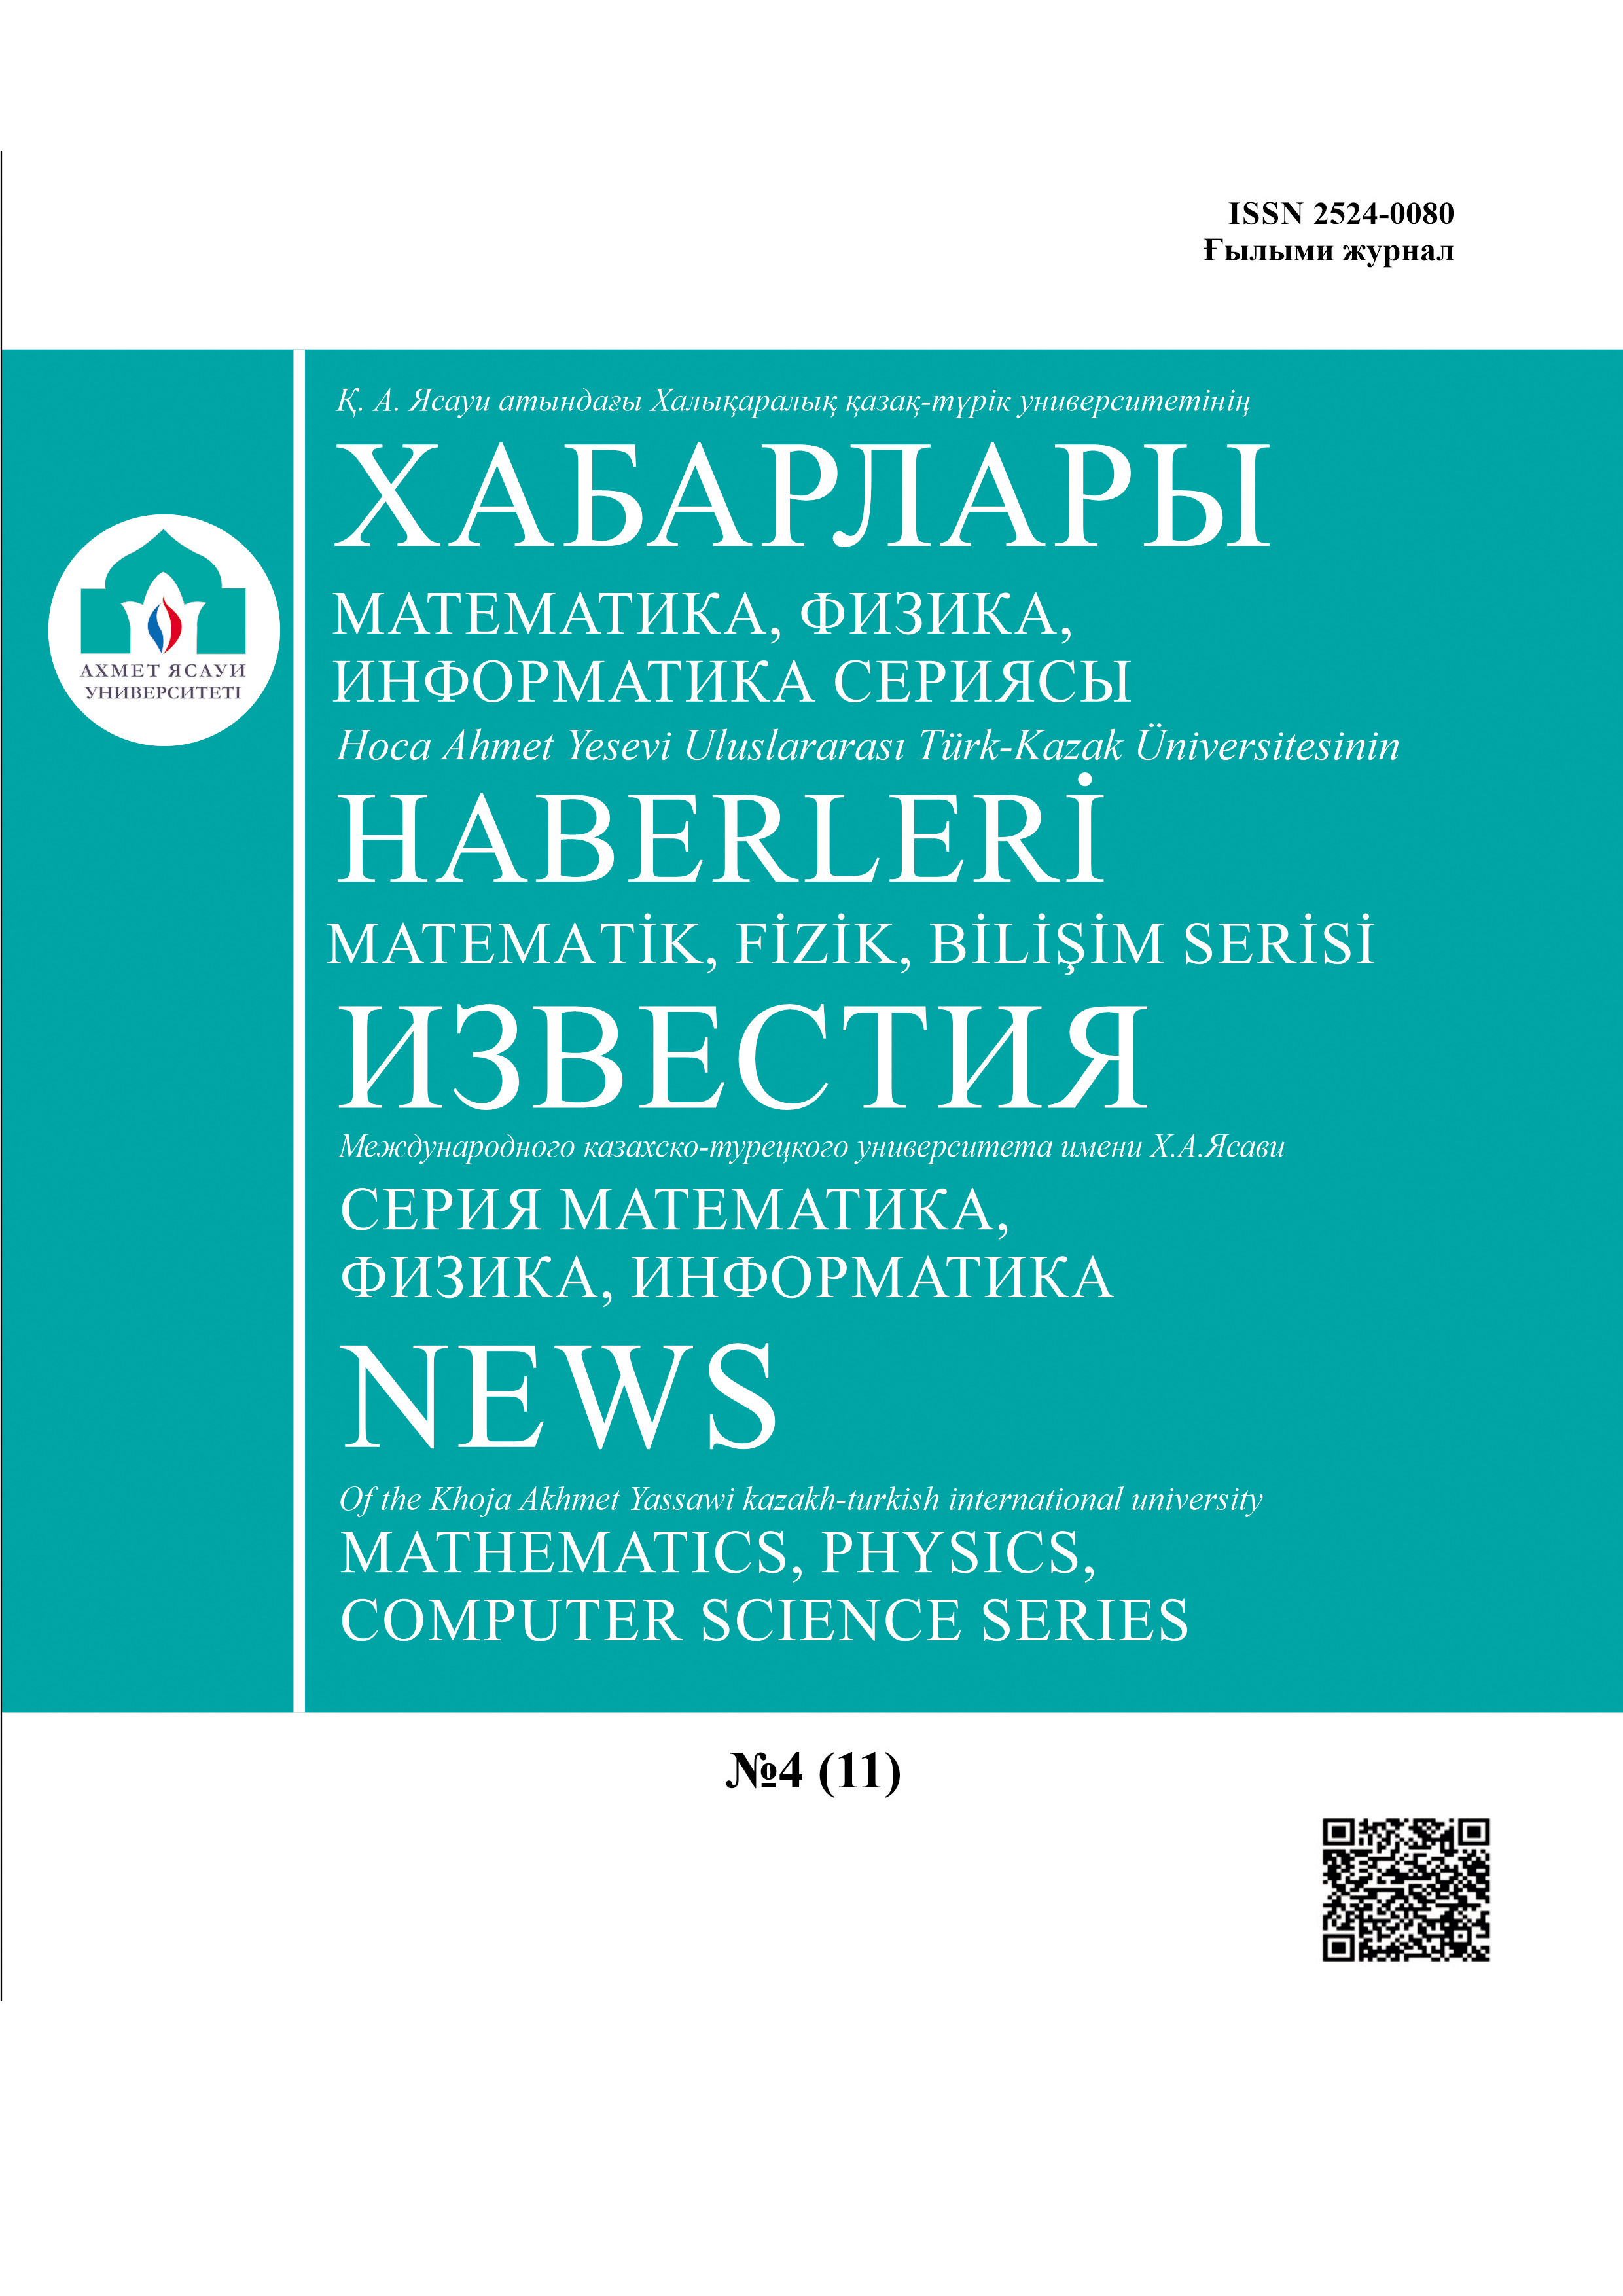 					View Vol. 4 No. 19 (2021): NEWS Of the Khoja Akhmet Yassawi kazakh-turkish international university (Mathematics, physics, computer science series)
				